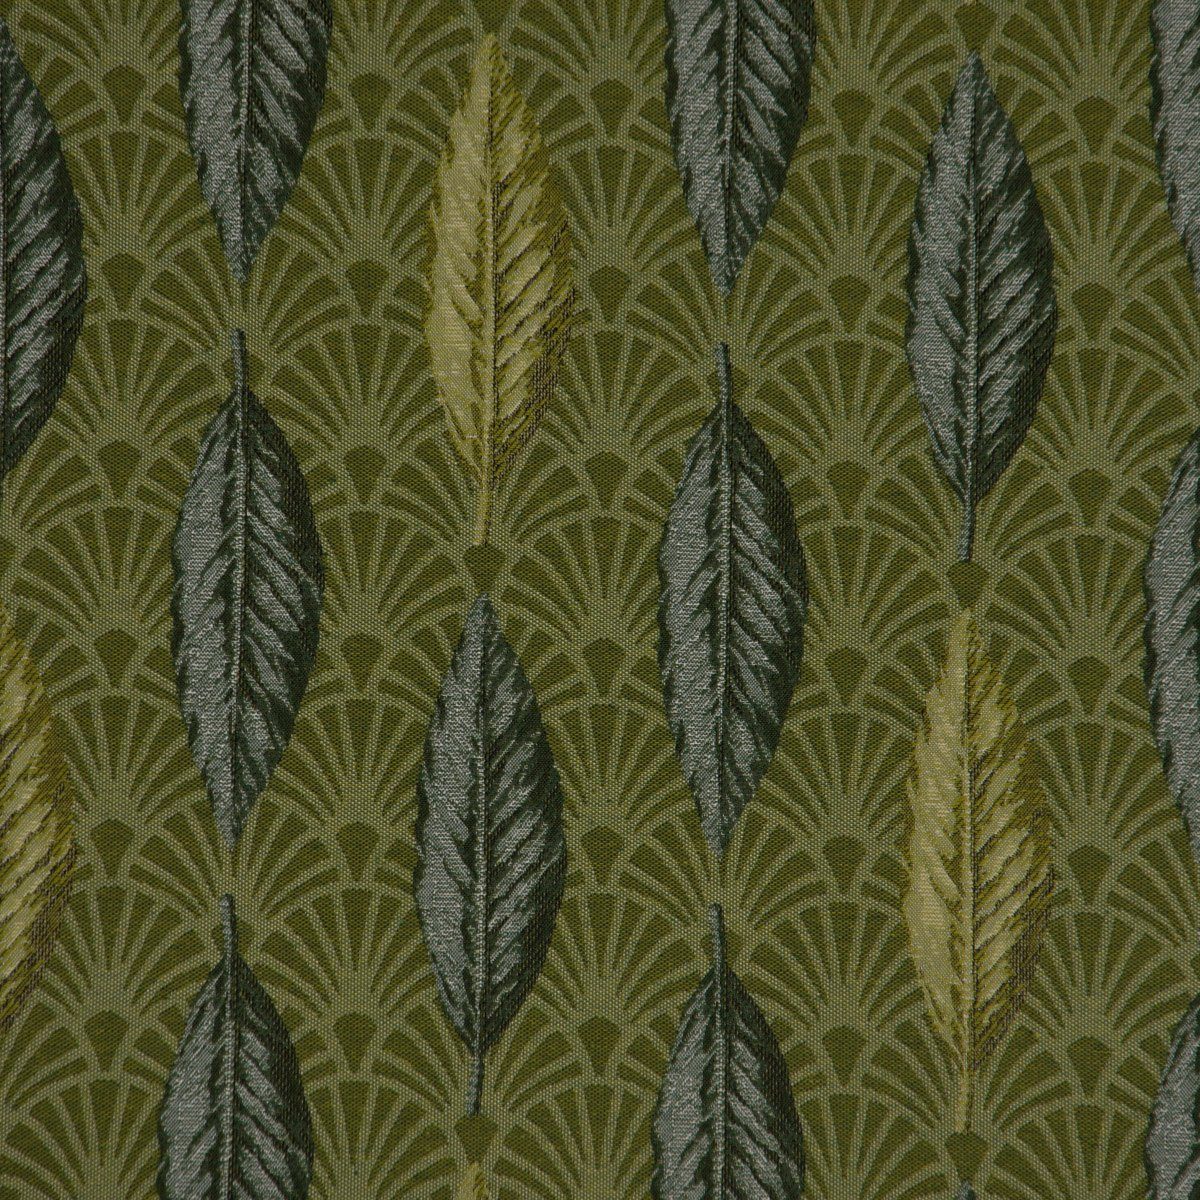 LEBEN. dunkle Tischläufer Sei, Art grün handmade Fächer Blätter Tischläufer LEBEN. SCHÖNER Déco SCHÖNER